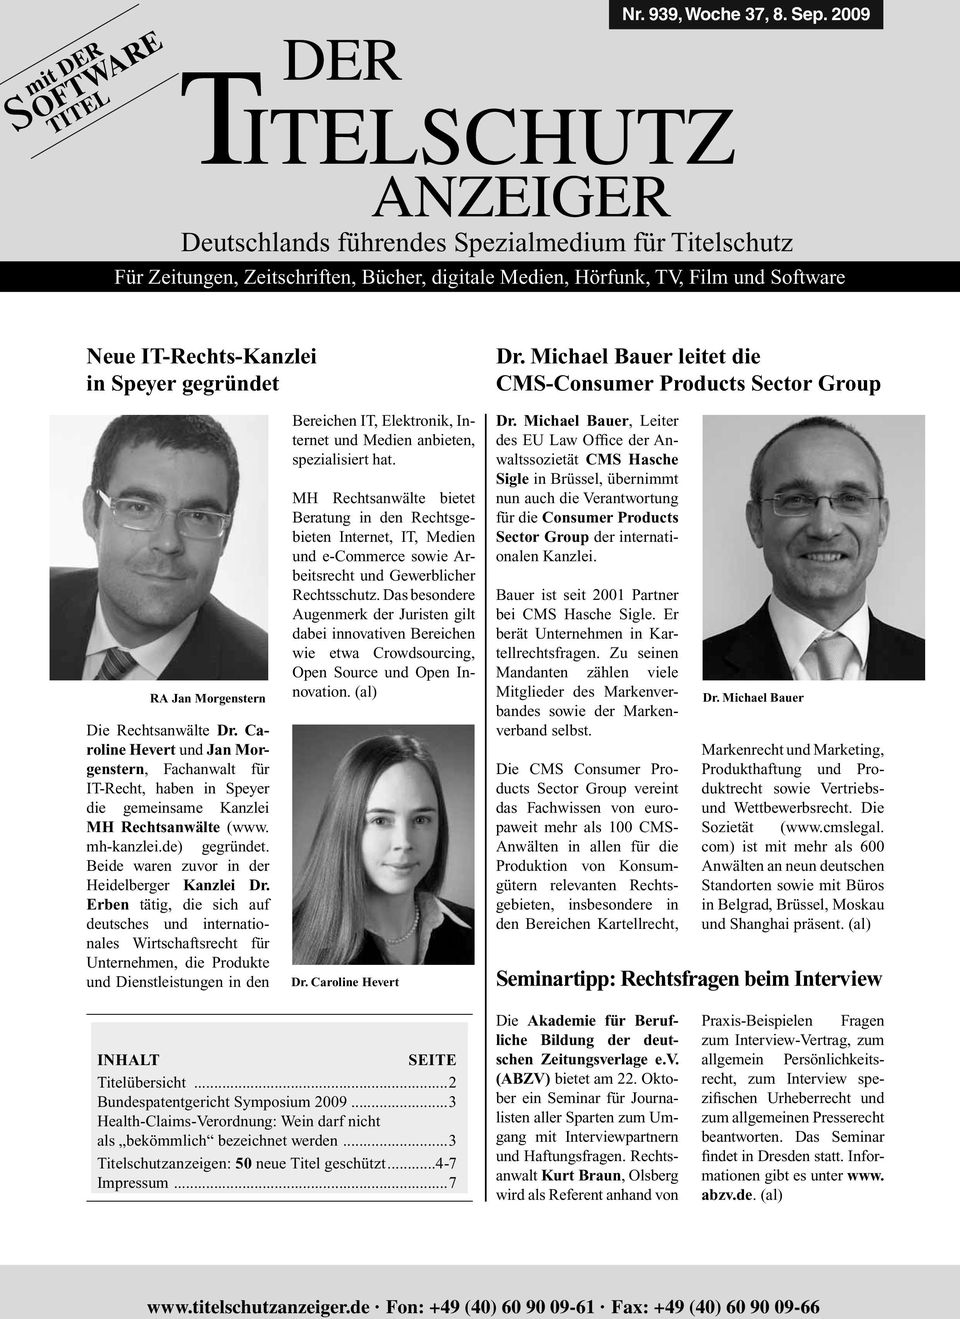 Caroline Hevert und Jan Morgenstern, Fachanwalt für IT-Recht, haben in Speyer die gemeinsame Kanzlei MH Rechtsanwälte (www. mh-kanzlei.de) gegründet. Beide waren zuvor in der Heidelberger Kanzlei Dr.